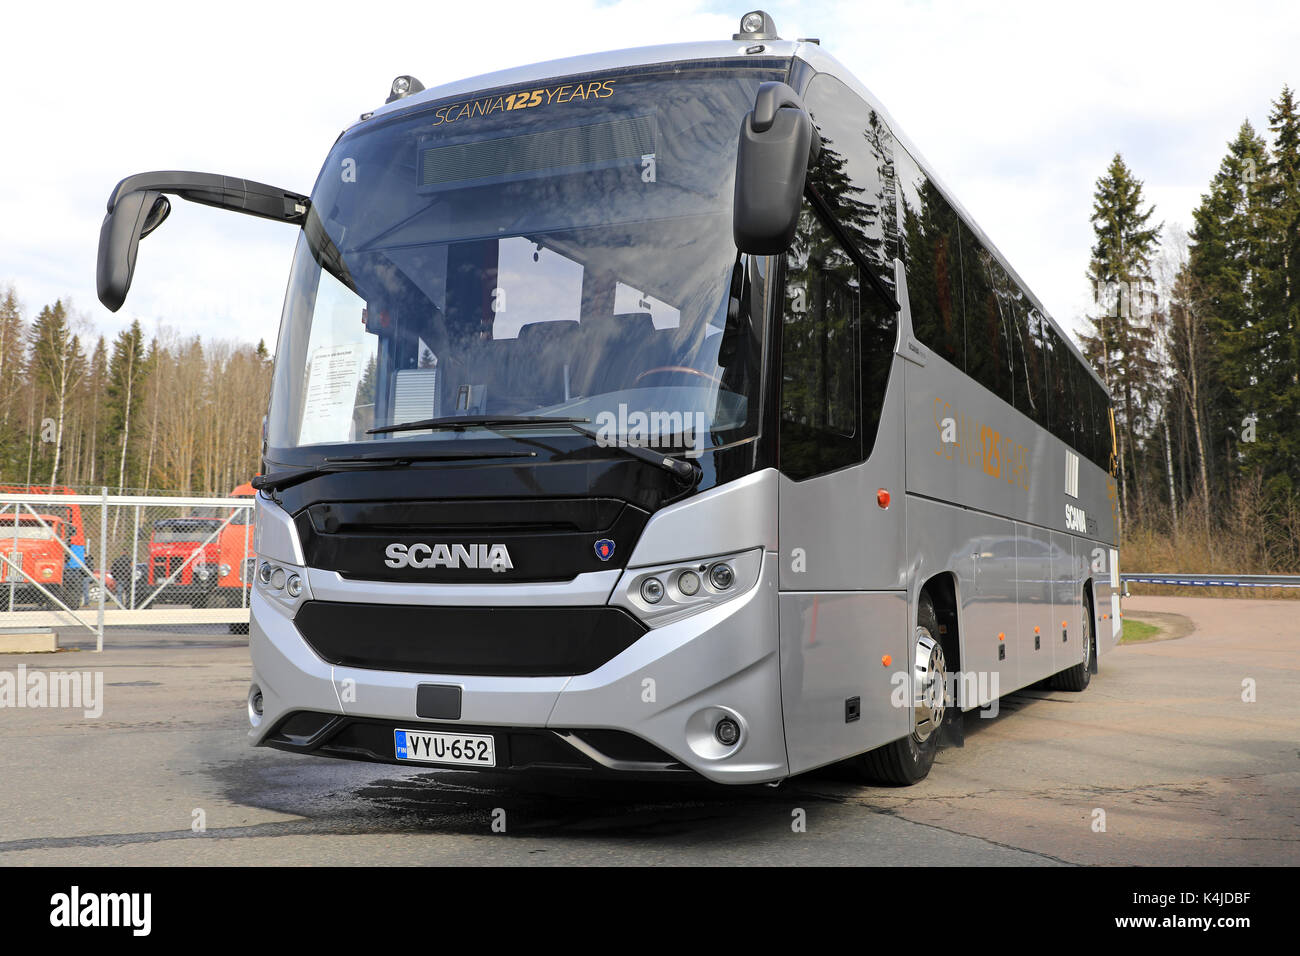 LAUKAA, Finnland - 19. MAI 2017: Neue Scania K410 Interlink Bus auf der Scania Ausstellung über Scania Zentrale Finnland, Öffentliche Veranstaltung. Die Interli Stockfoto